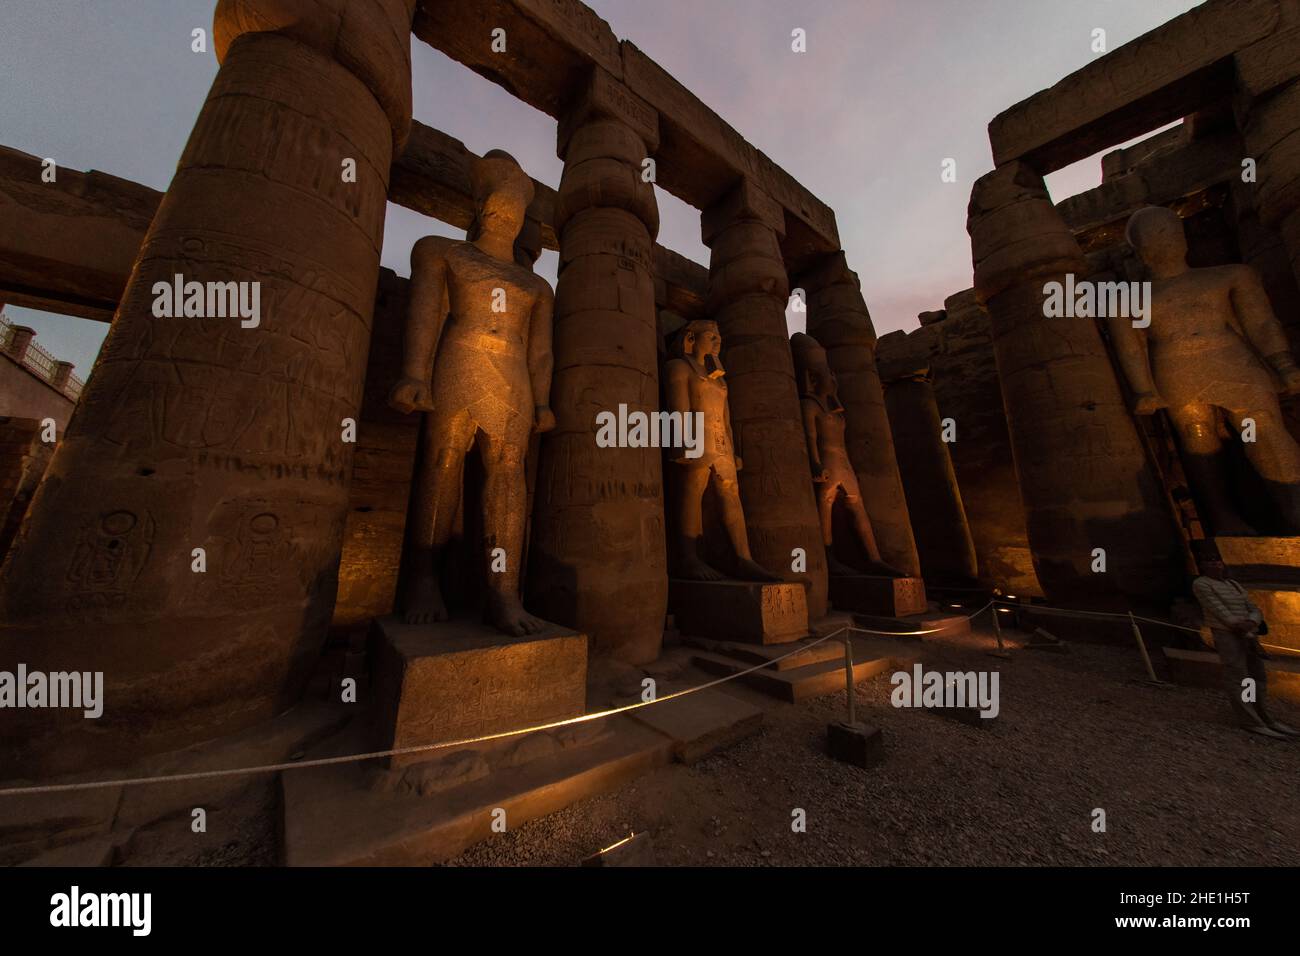 Statuen und Säulen im Luxor-Tempel in Ägypten, die am Abend durch Lichter beleuchtet werden, wenn die Dunkelheit fällt, was einen wunderschönen und dramatischen Effekt bewirkt. Stockfoto